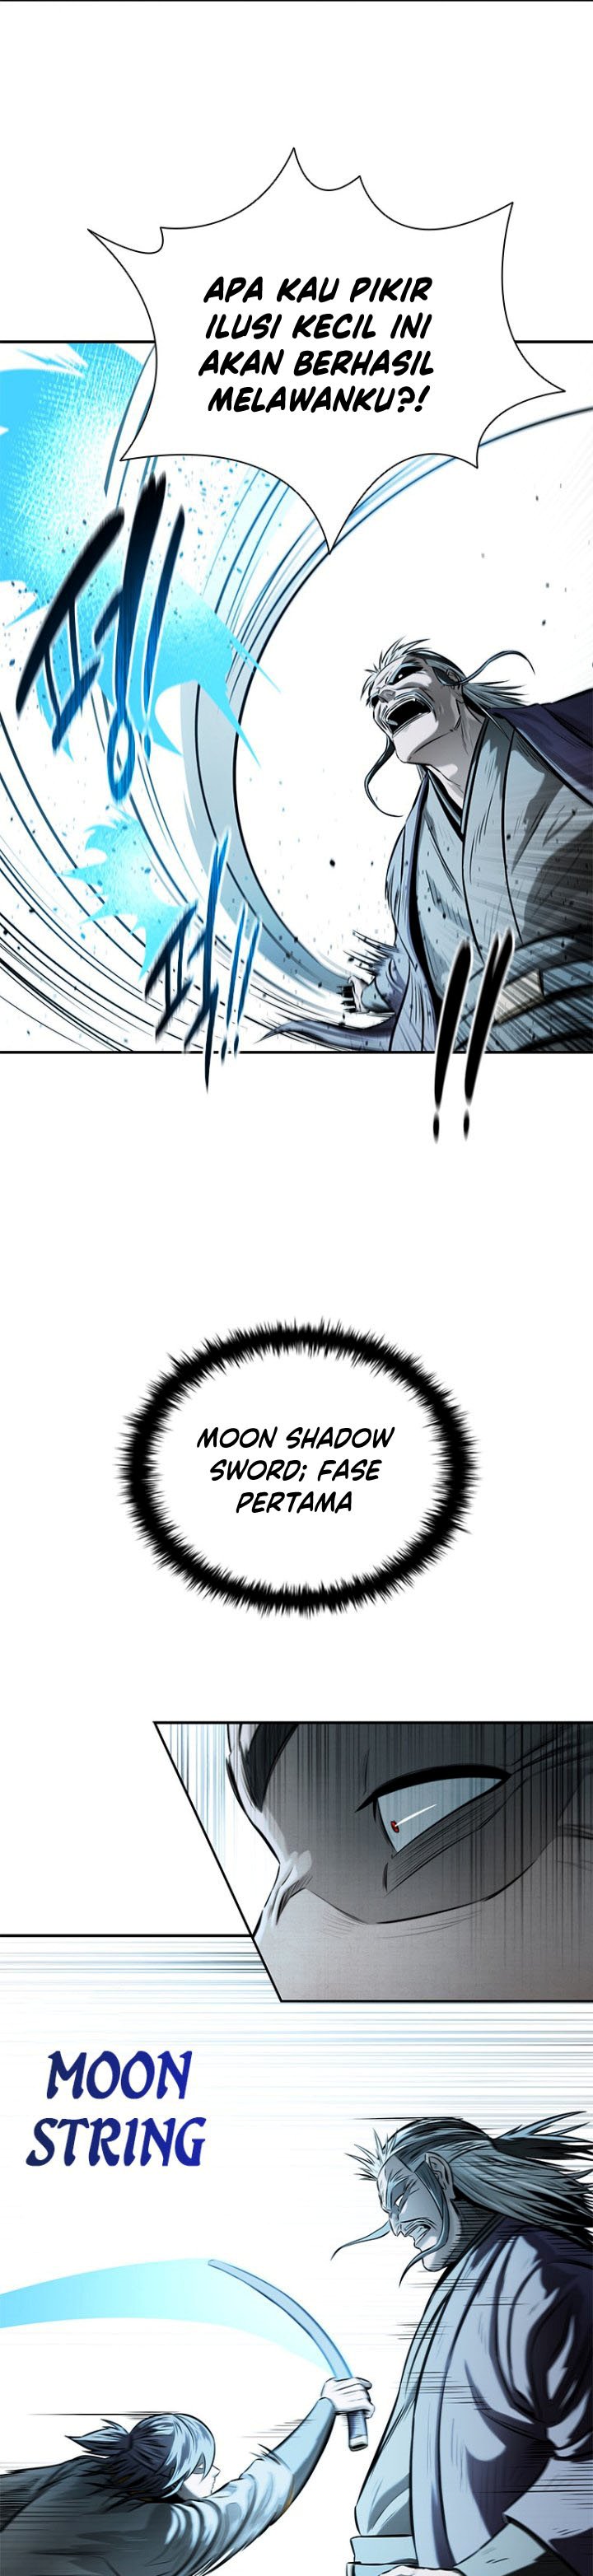 Moon-Shadow Sword Emperor Chapter 15